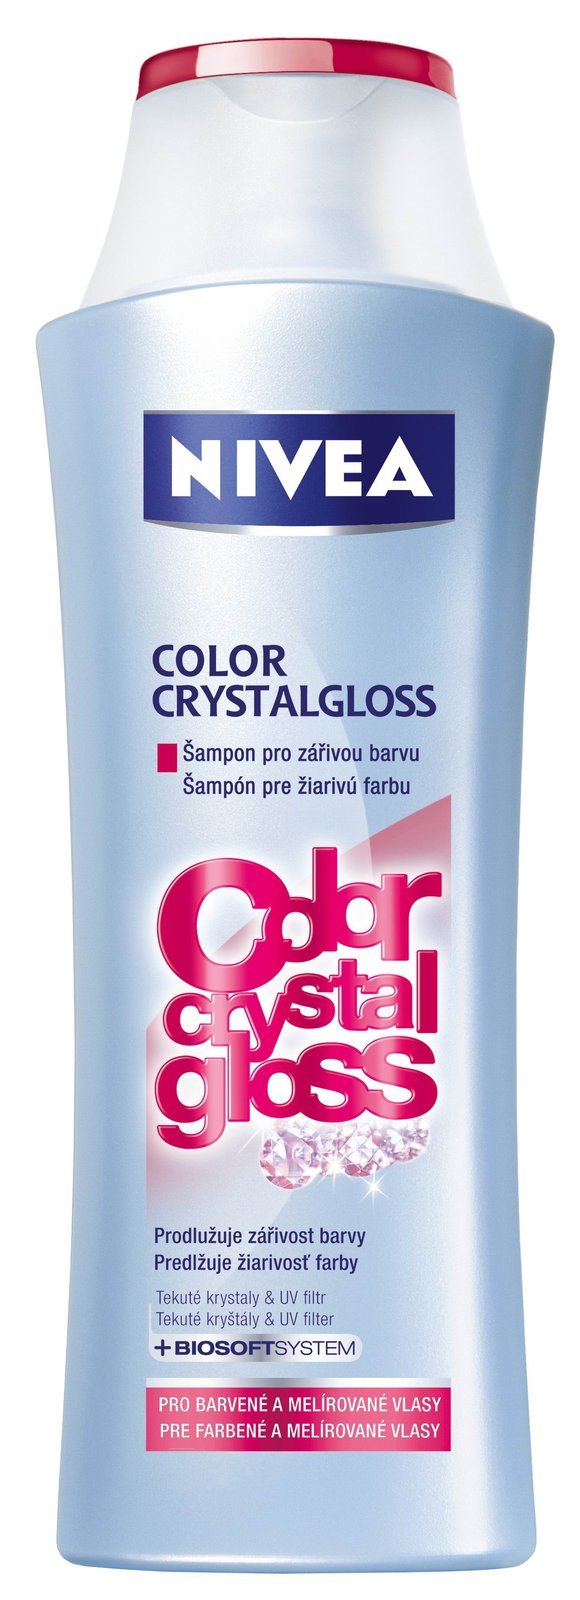 Šampon pro zářivou barvu Color CrystalGloss, Nivea, 69 Kč.